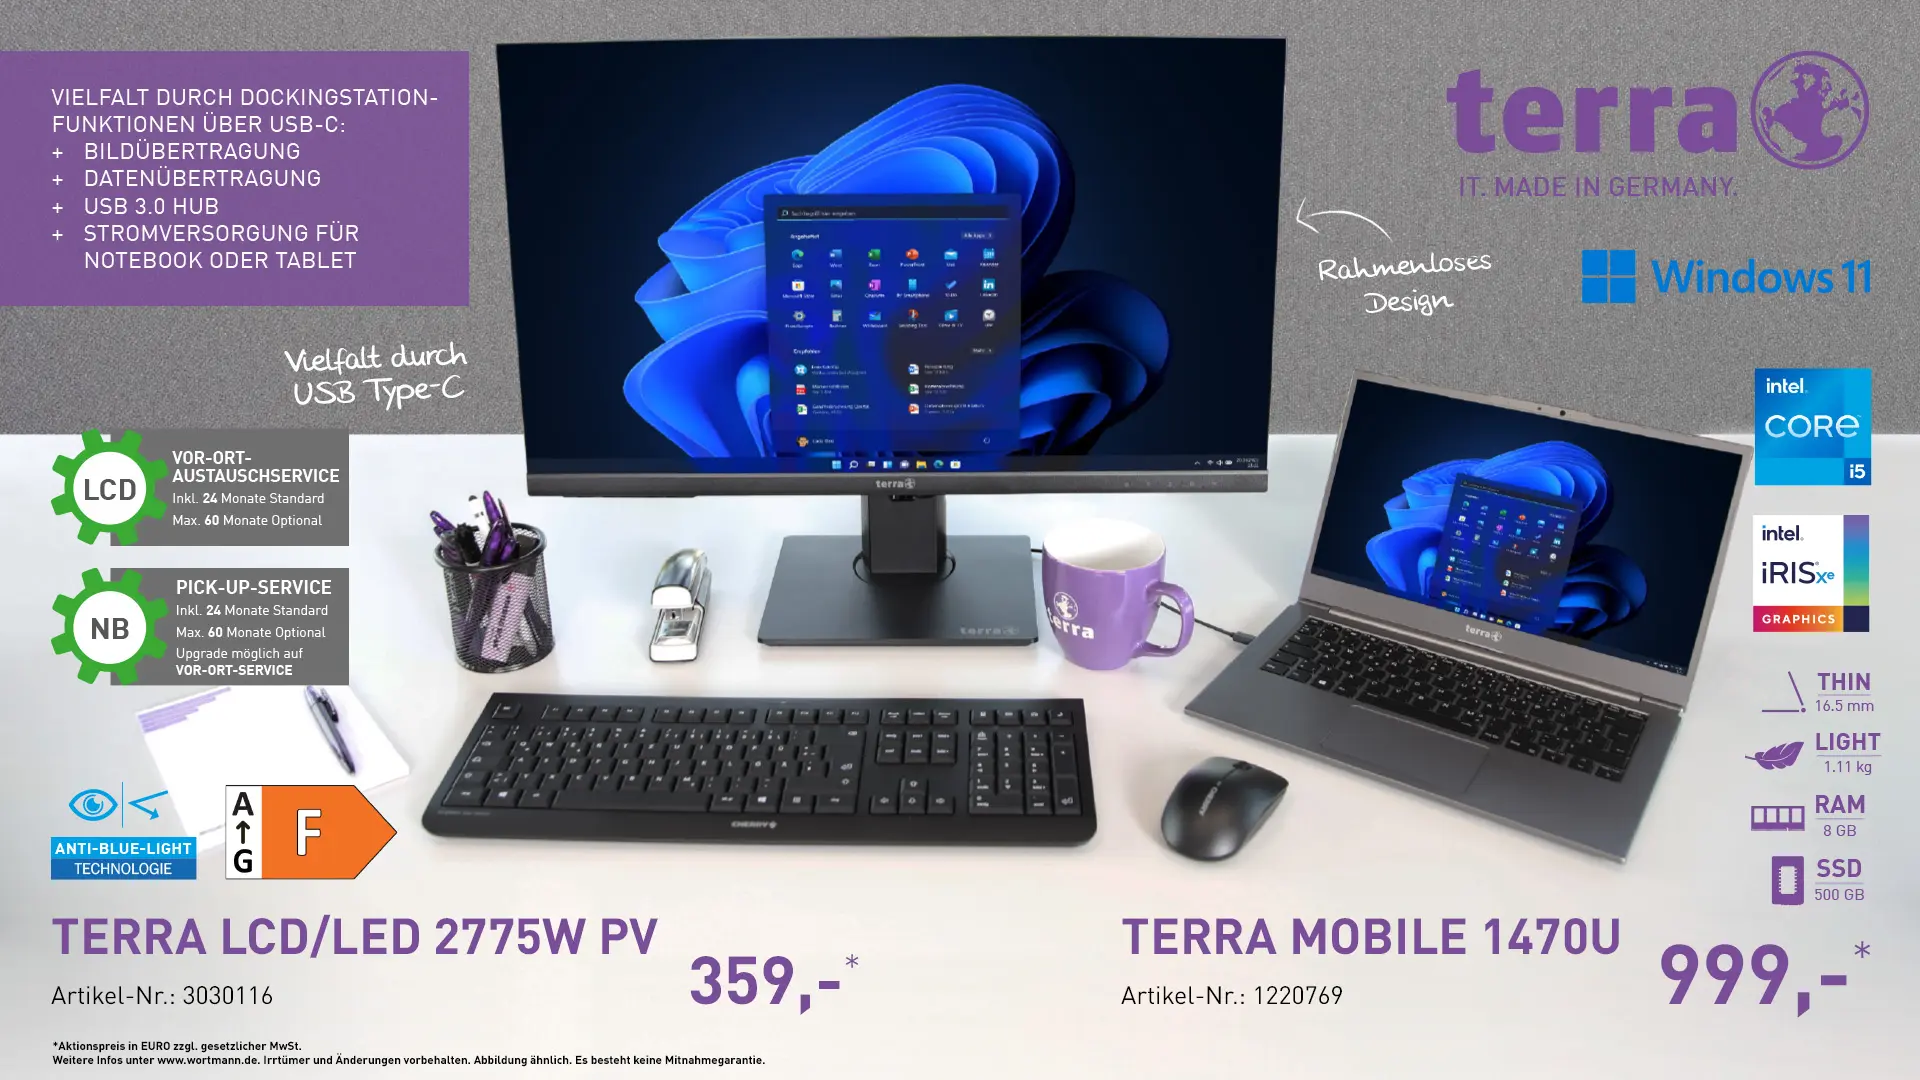 Terra Mobile 1470U & Terra LCD/LED 2775W PV